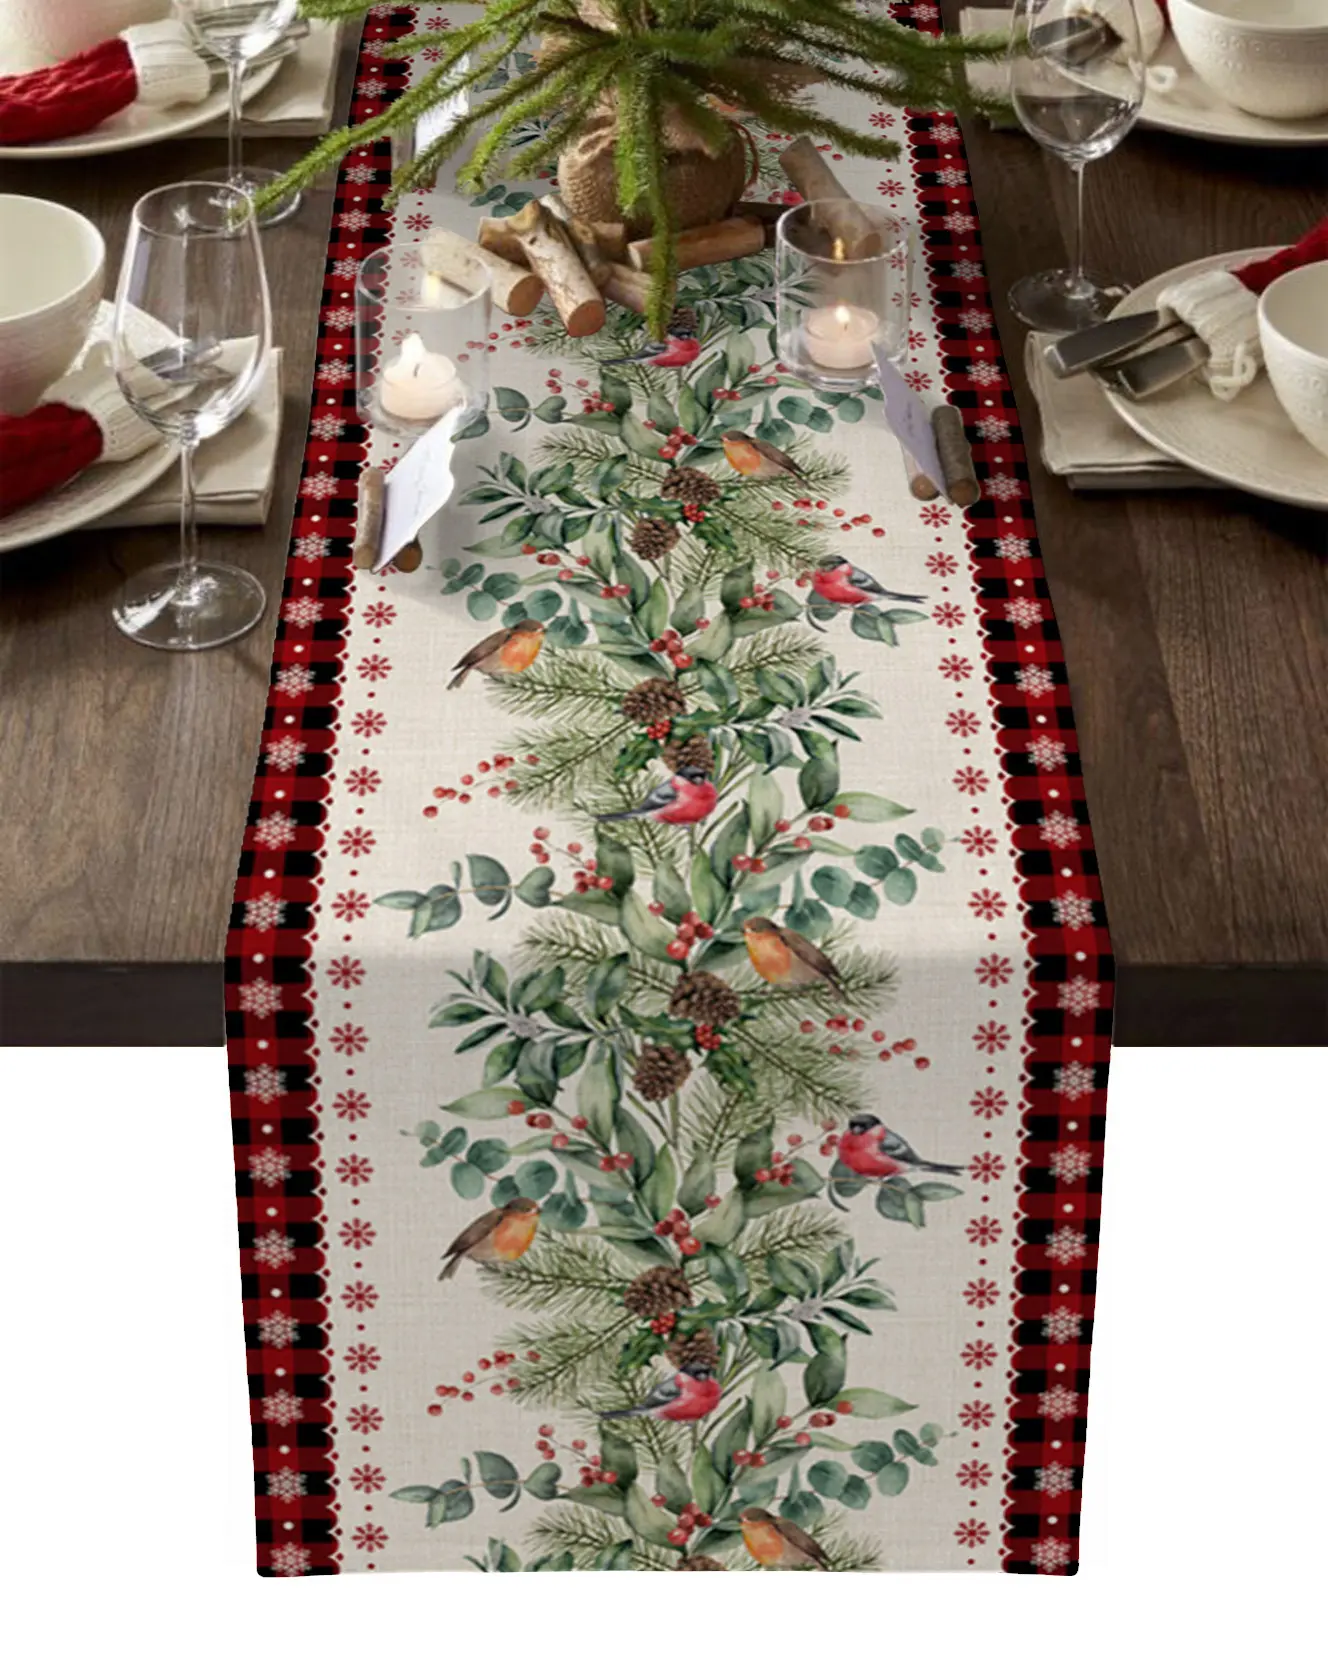 Weihnachten Tisch läufer Neujahr Party Dekor Home Red Plaid Esstisch Läufer und Tischset Set